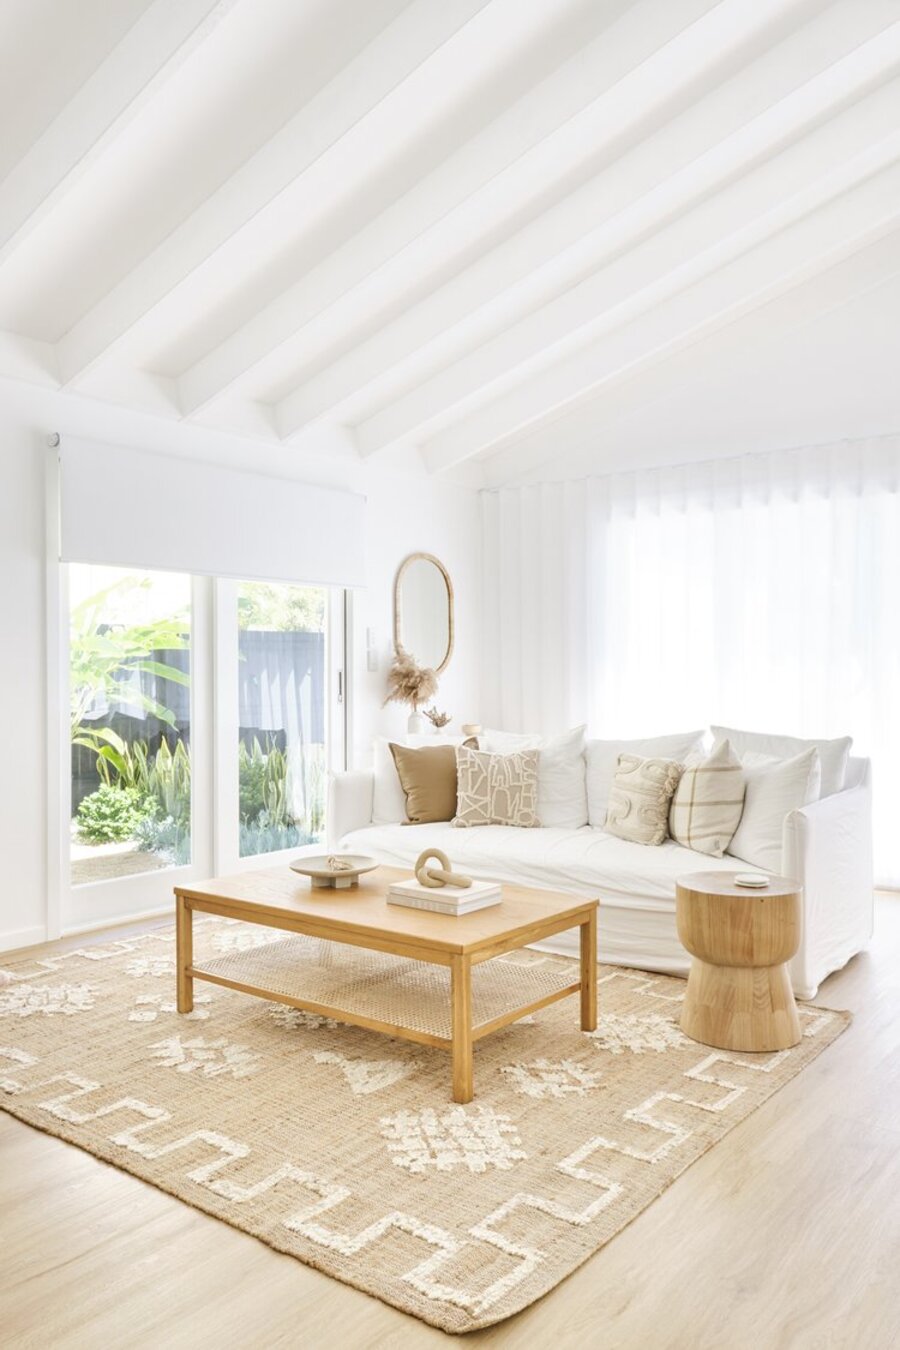 Sala de estar con techos, cortinas y muros blancos, piso de madera y una gran alfombra de yute con diseños blancos. Sobre ella hay una mesa de centro de madera clara y frente a ella, un sofá blanco con cojines en tonos tierra.